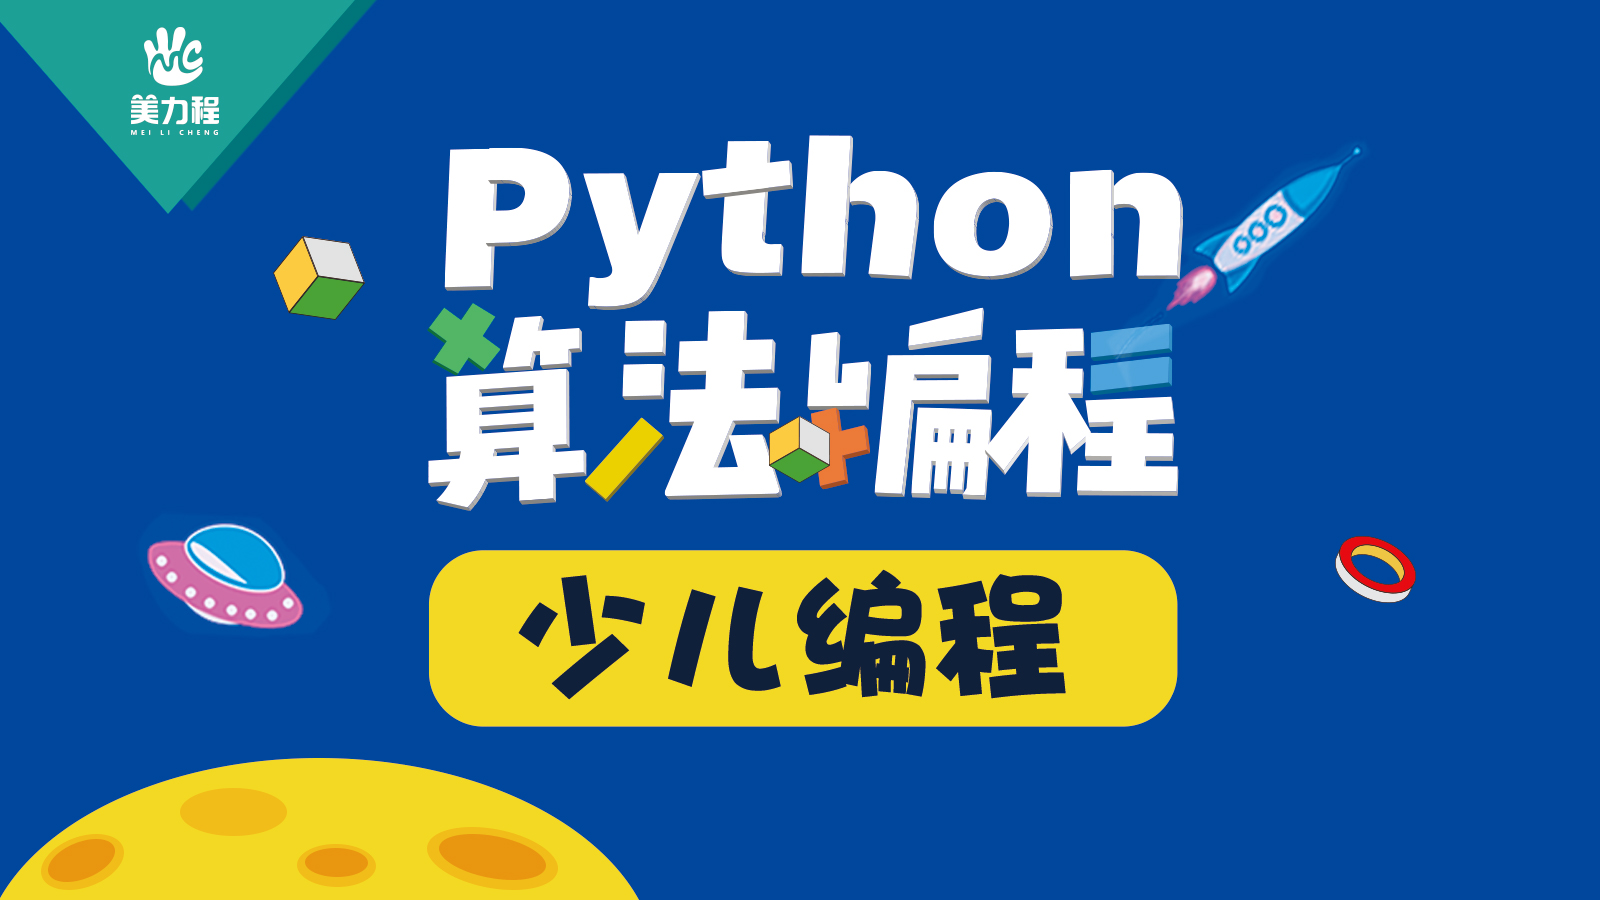 少儿人工智能编程 Python少儿编程 美力程青少儿编程图片